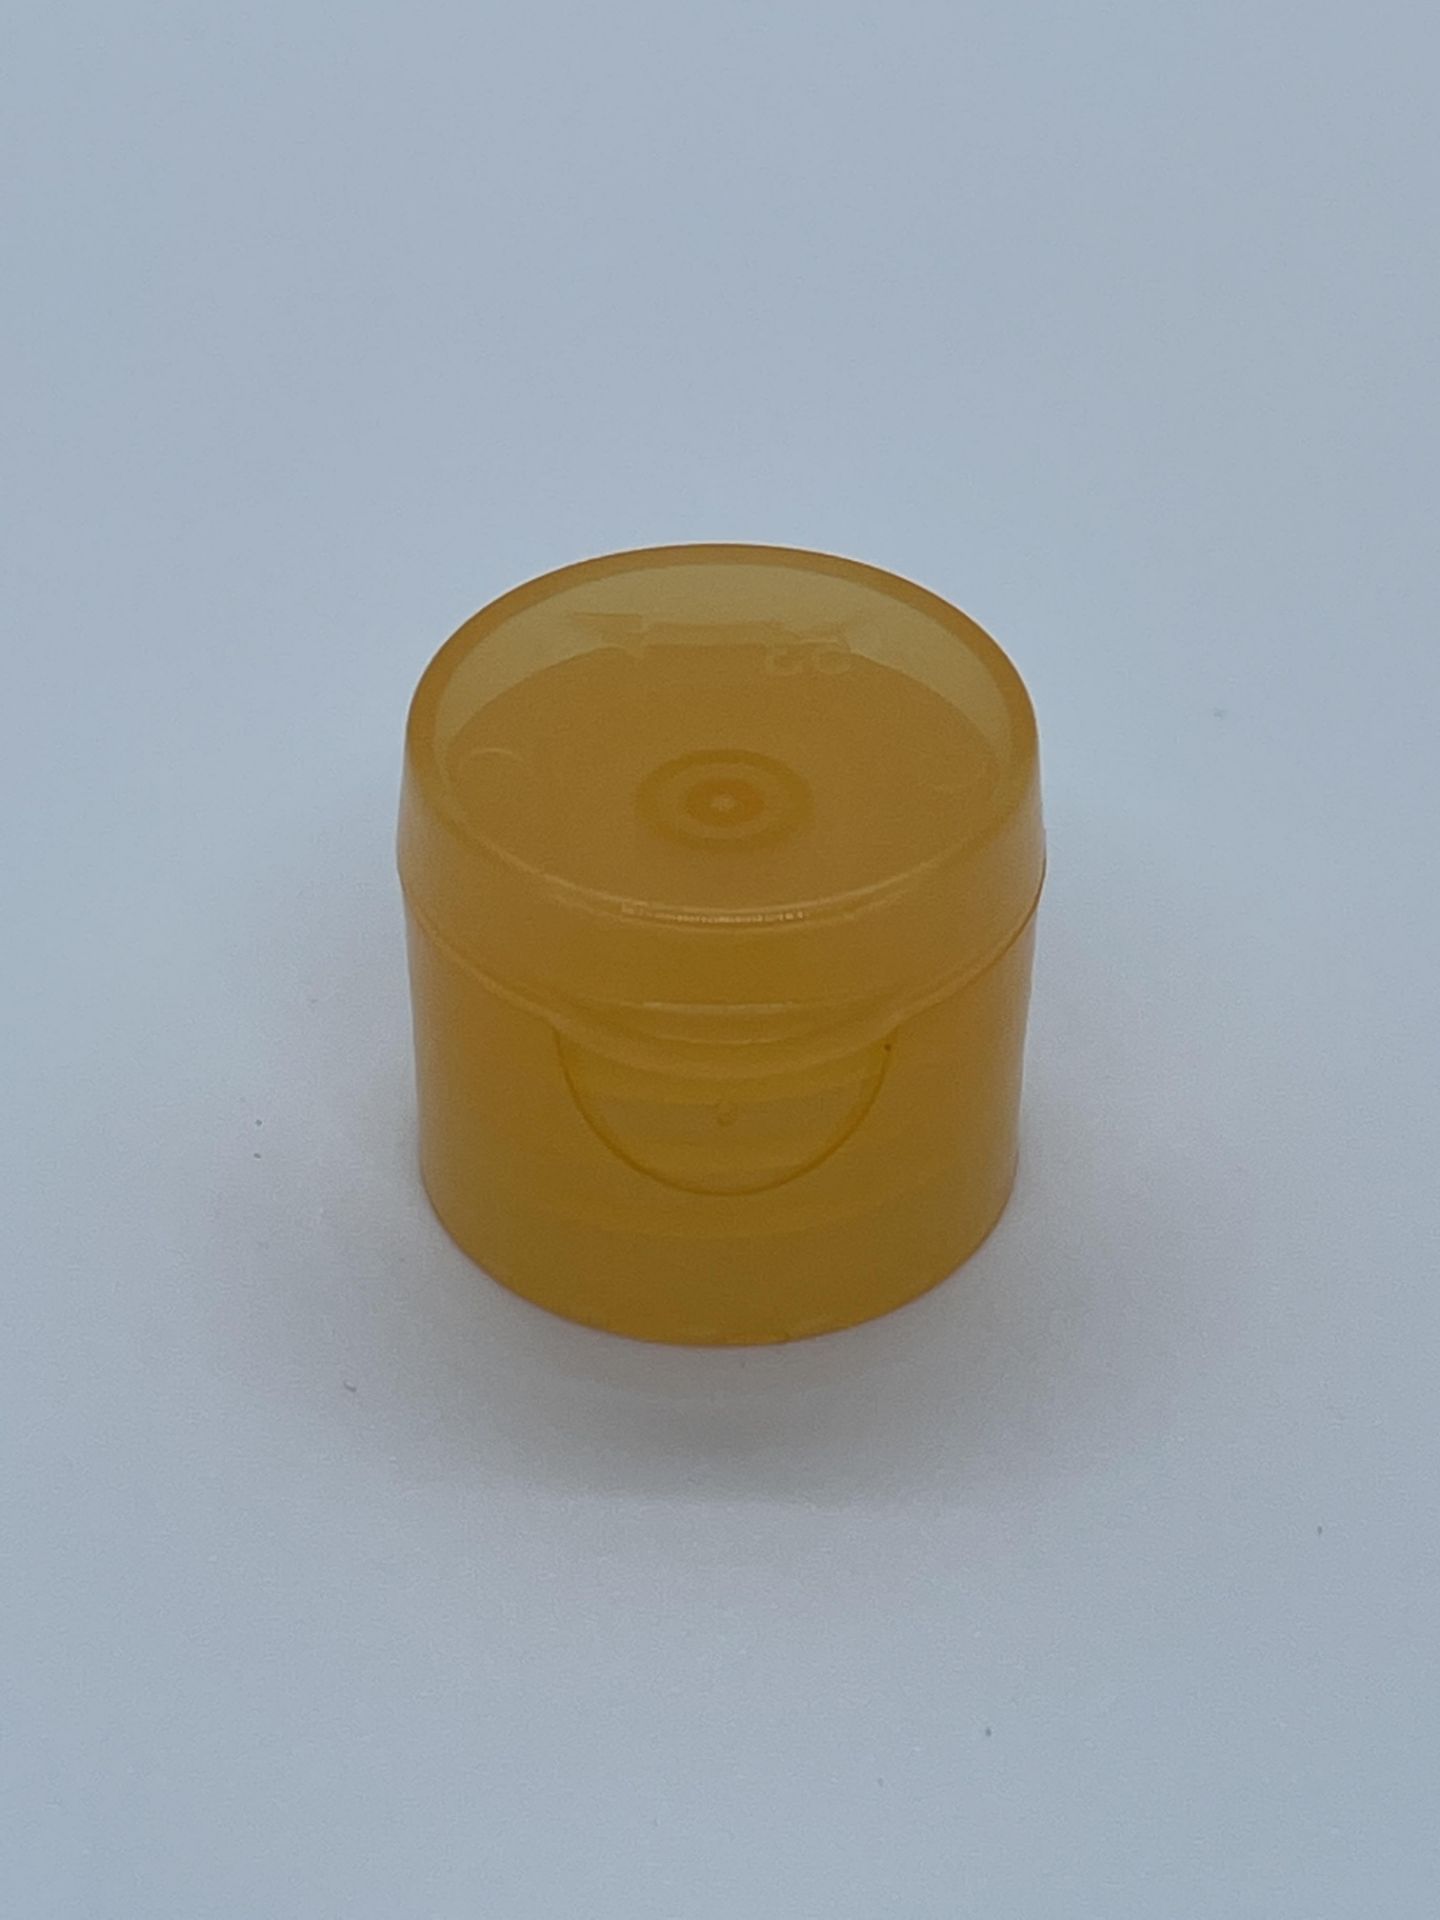 40,000 Orange Flip Lid Bottle Caps for 2 oz plastic bottles & 4 oz glass bottles, 20-410 Threading - Image 2 of 4